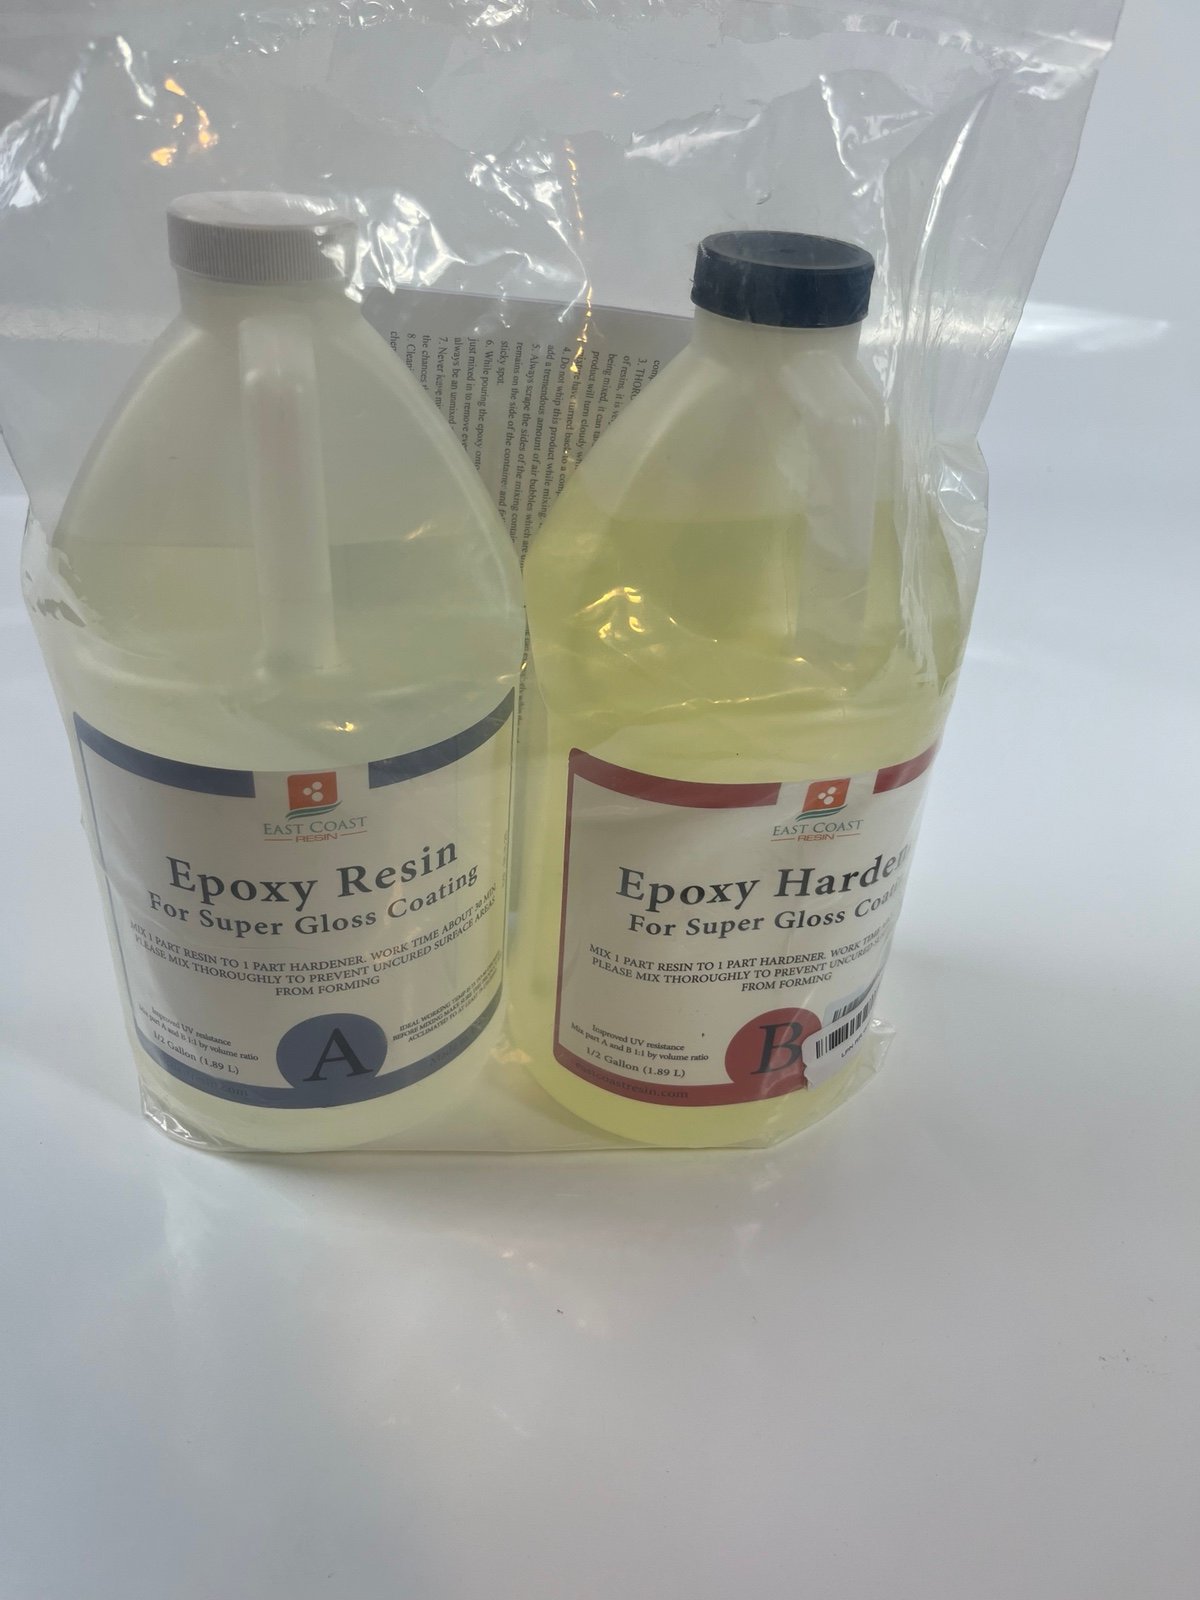 East Coast Resin Epoxy Resin & Hardener For Super Gloss Coating 1 Gallon Bottles kbHBjOJxN